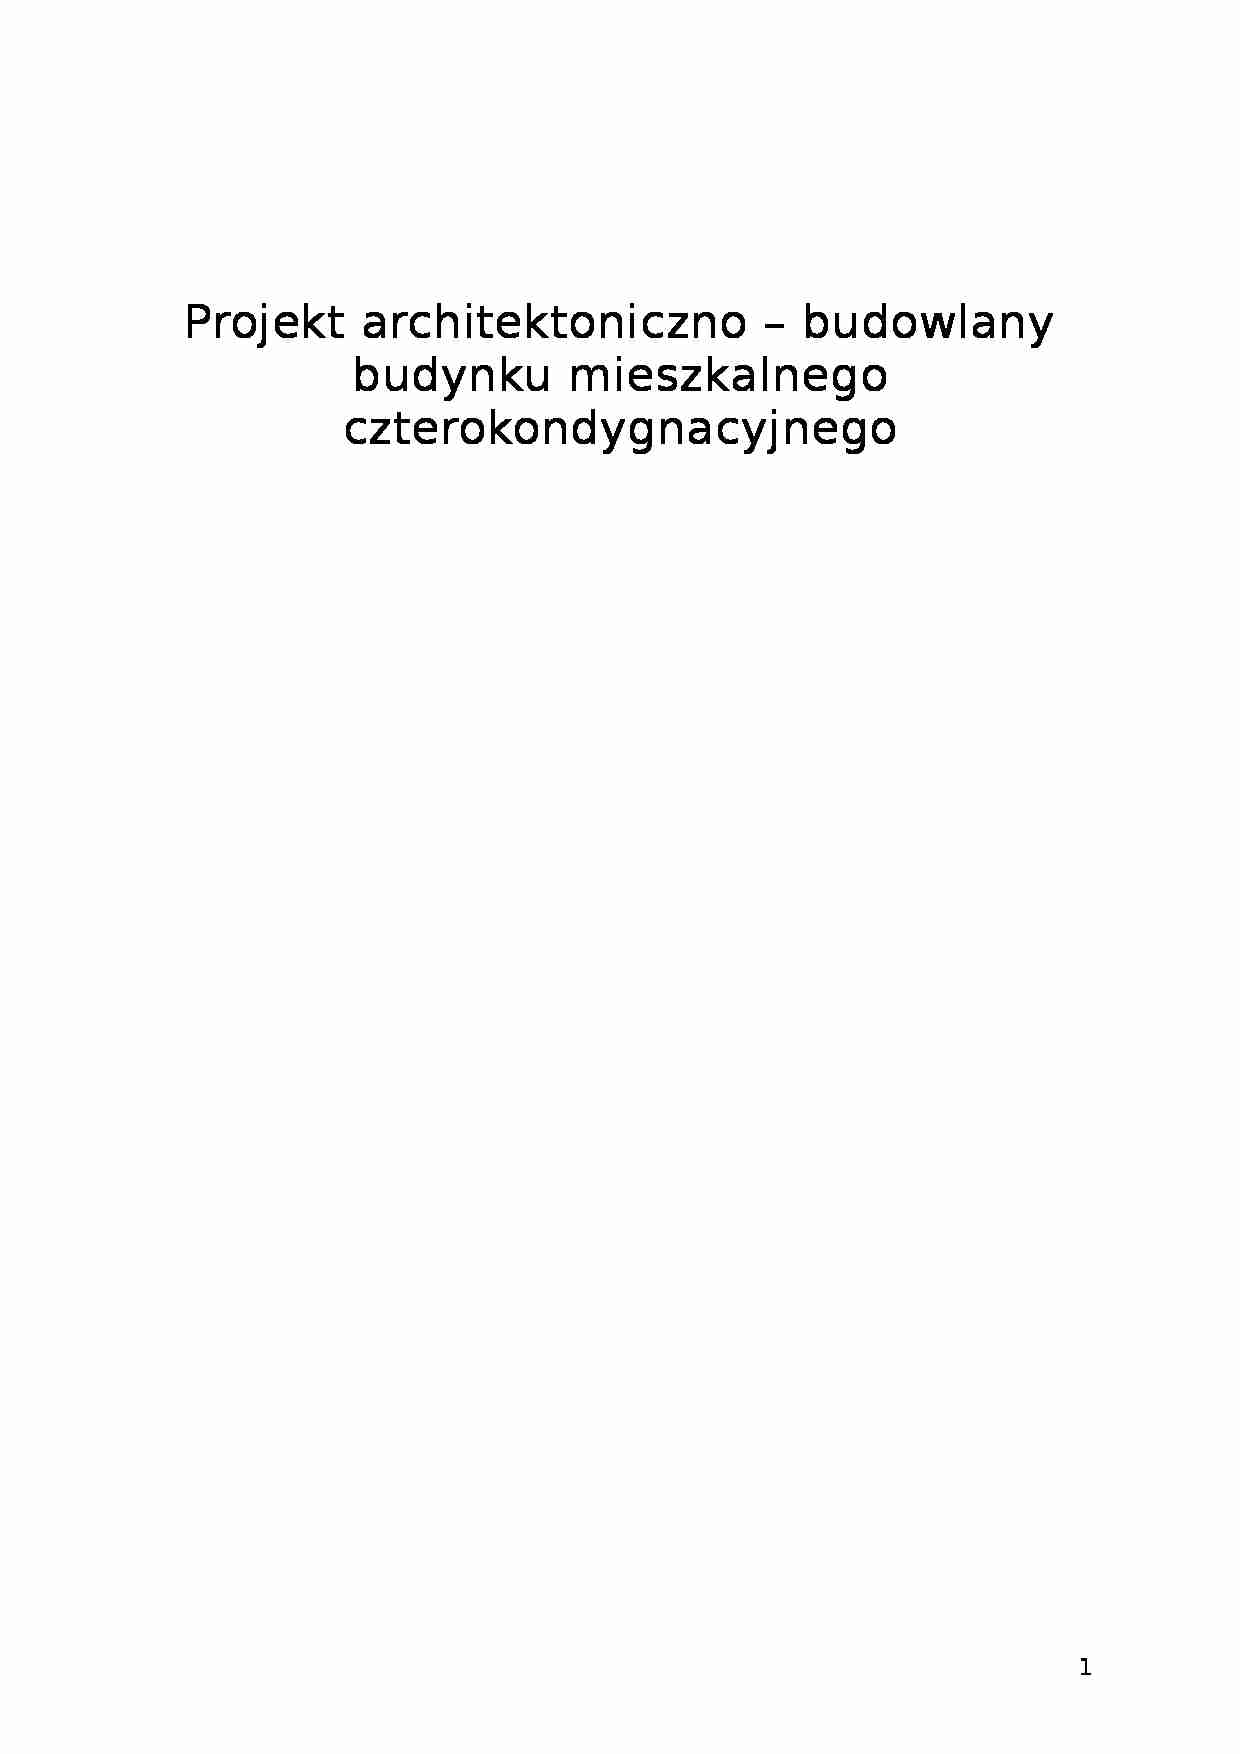 Projekt architektoniczno-budowlany budynku mieszkalnego czterokondygnacyjnego 2 - strona 1